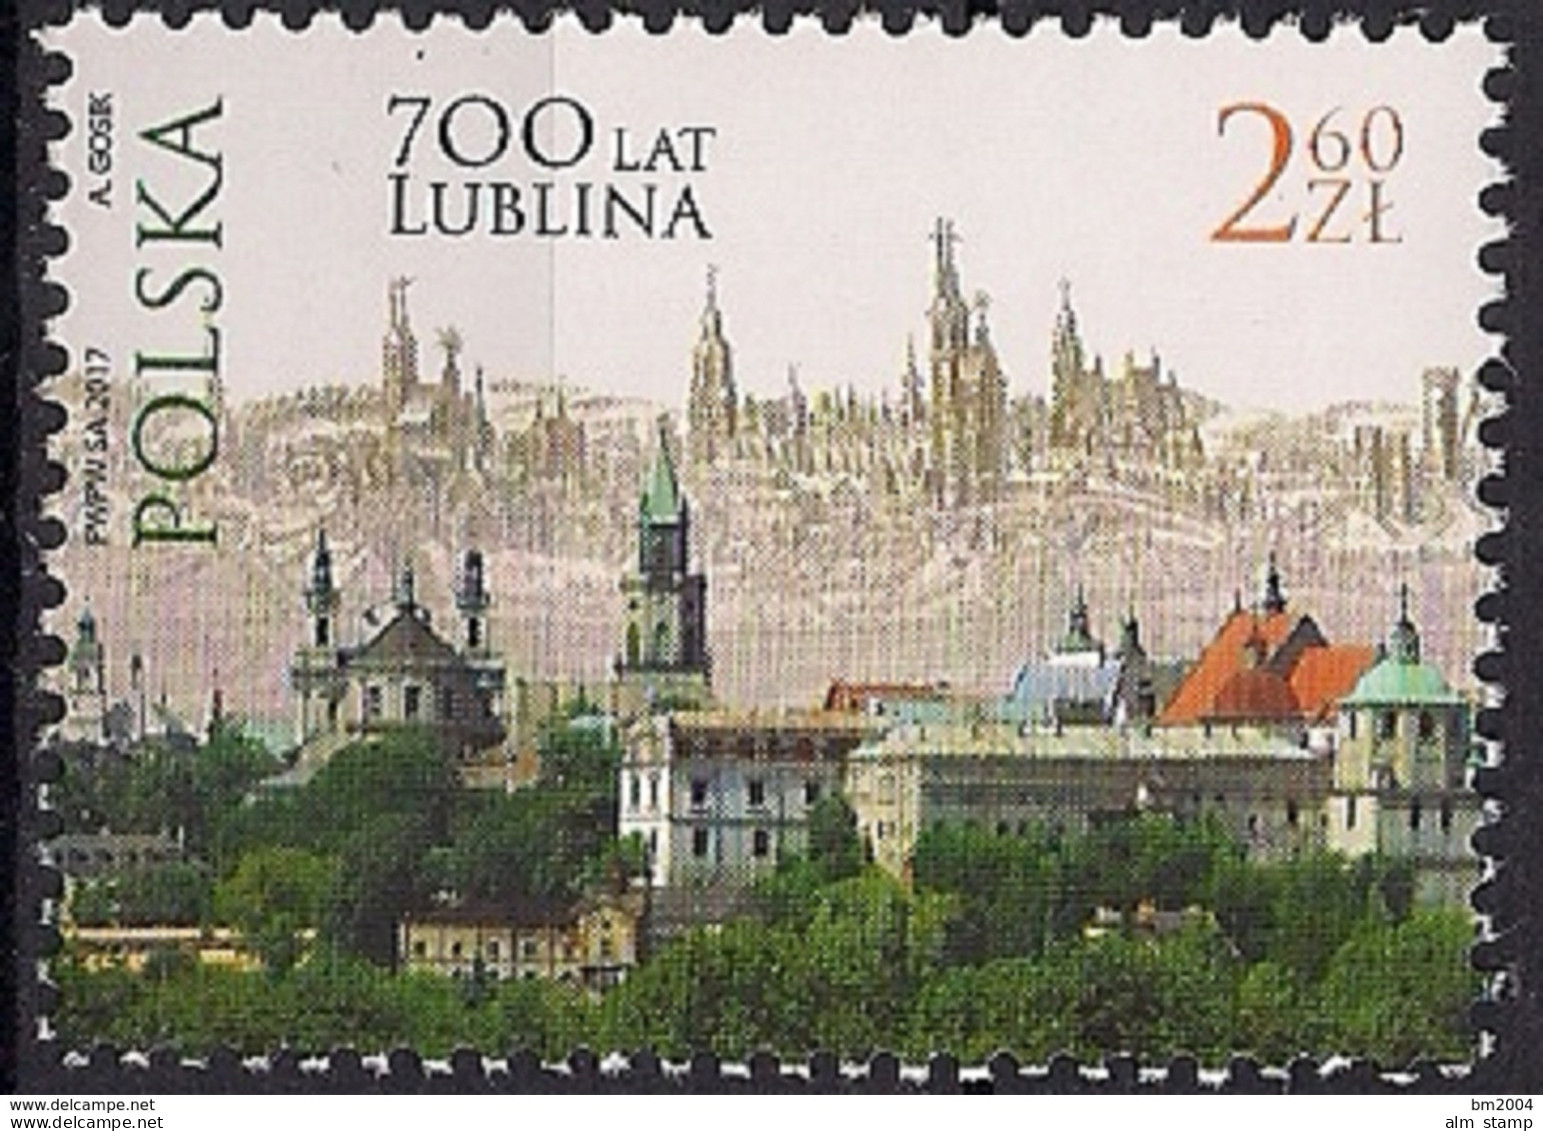 2017 Polen Poland  Mi. 4904**MNH 700 Jahre Stadt Lublin - Ungebraucht